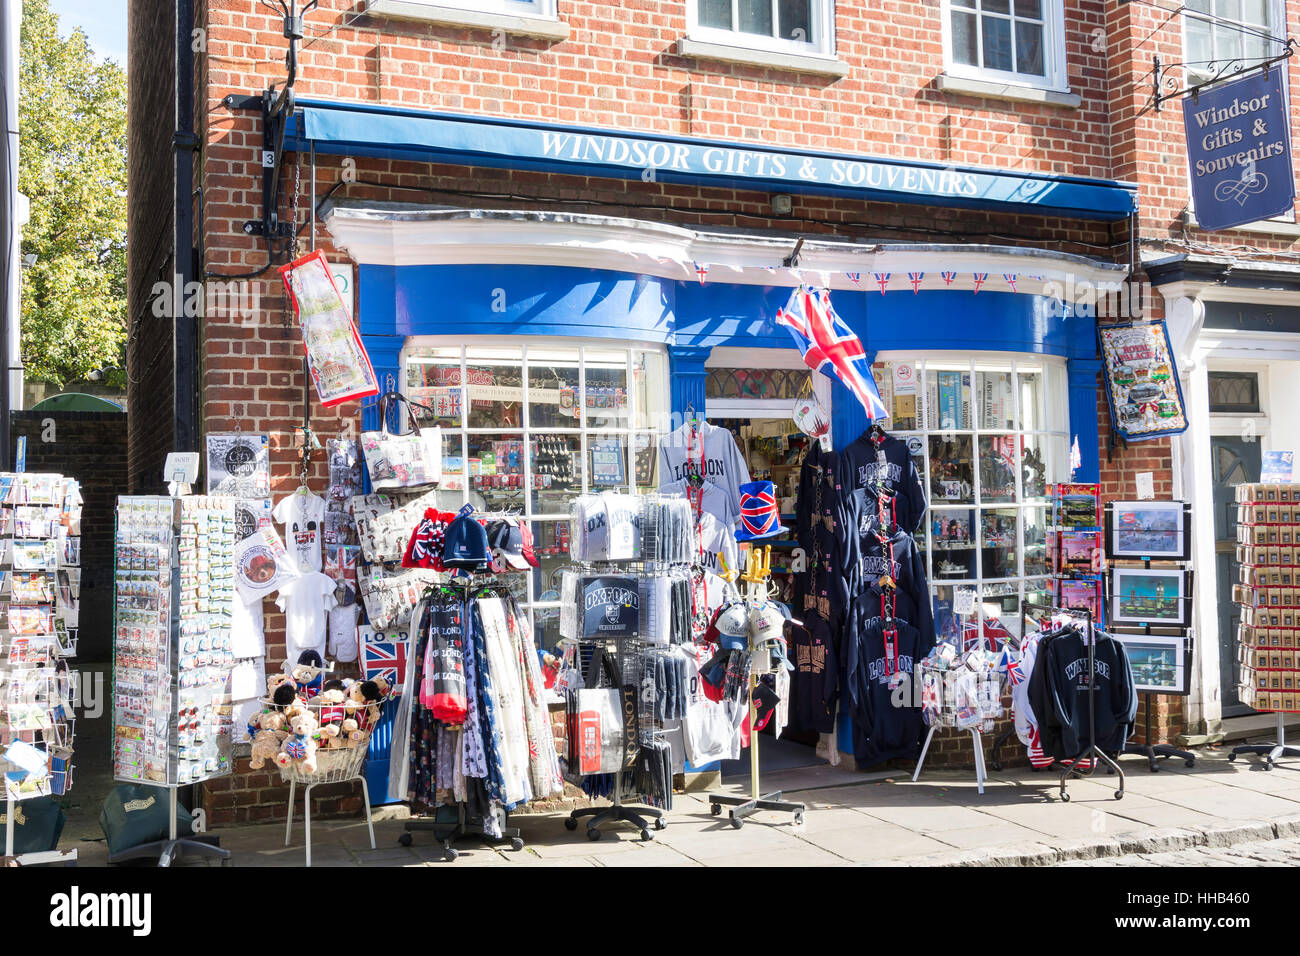 Windsor regalo y tienda de souvenirs, Church Street, Windsor, Berkshire, Inglaterra, Reino Unido Foto de stock